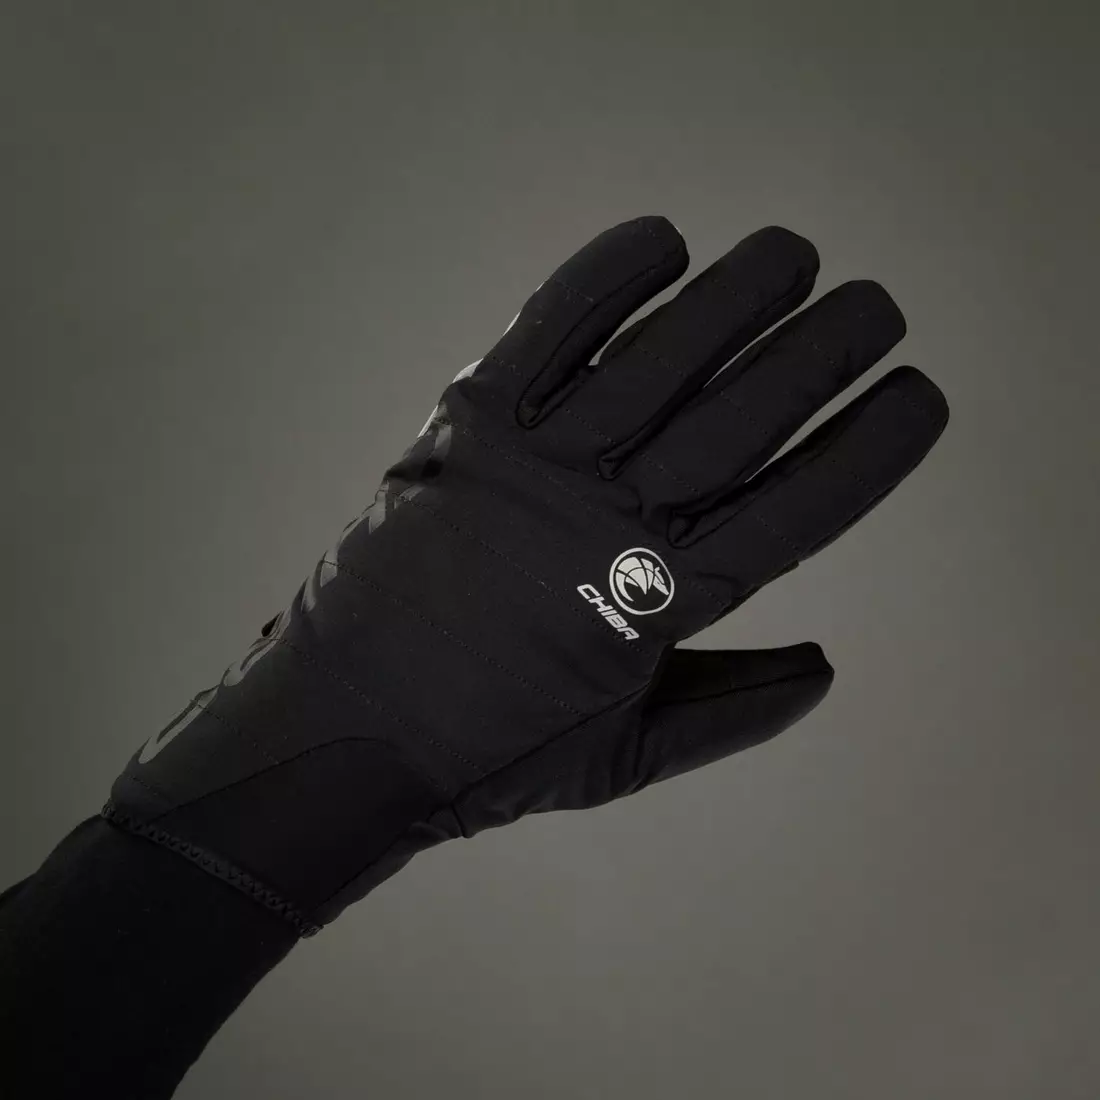 CHIBA ROADMASTER Winter Handschuhe schwarz 3120520